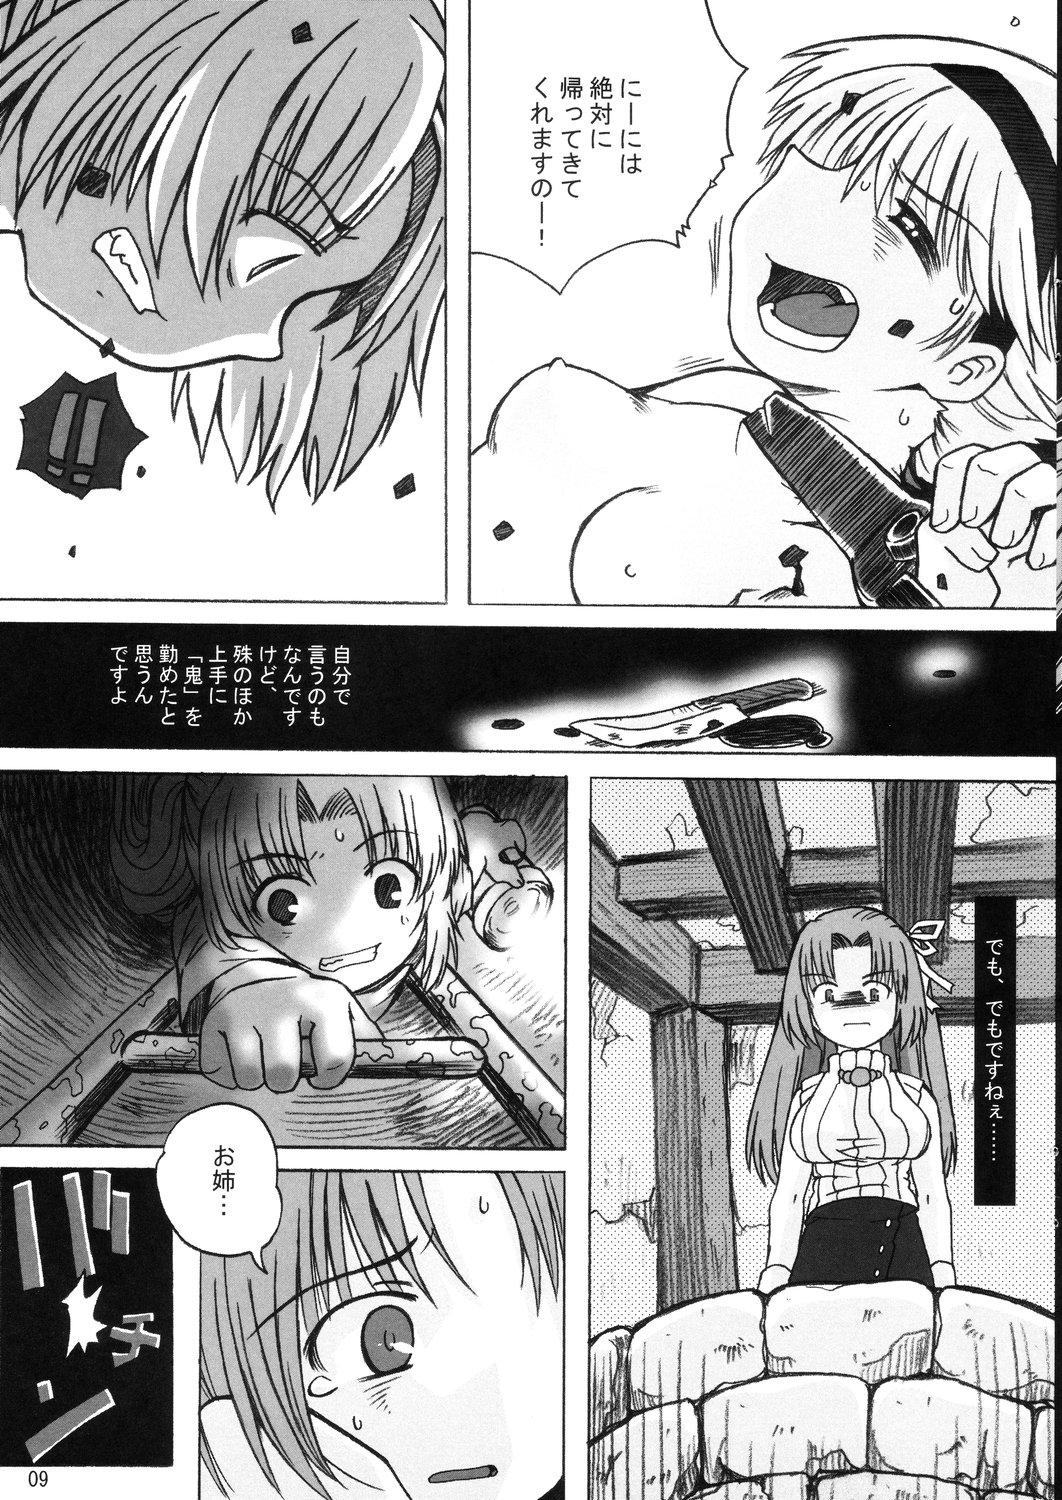 Trannies Hinamisawa no hon - Shin Kikoku hen - Higurashi no naku koro ni | when they cry Cop - Page 9